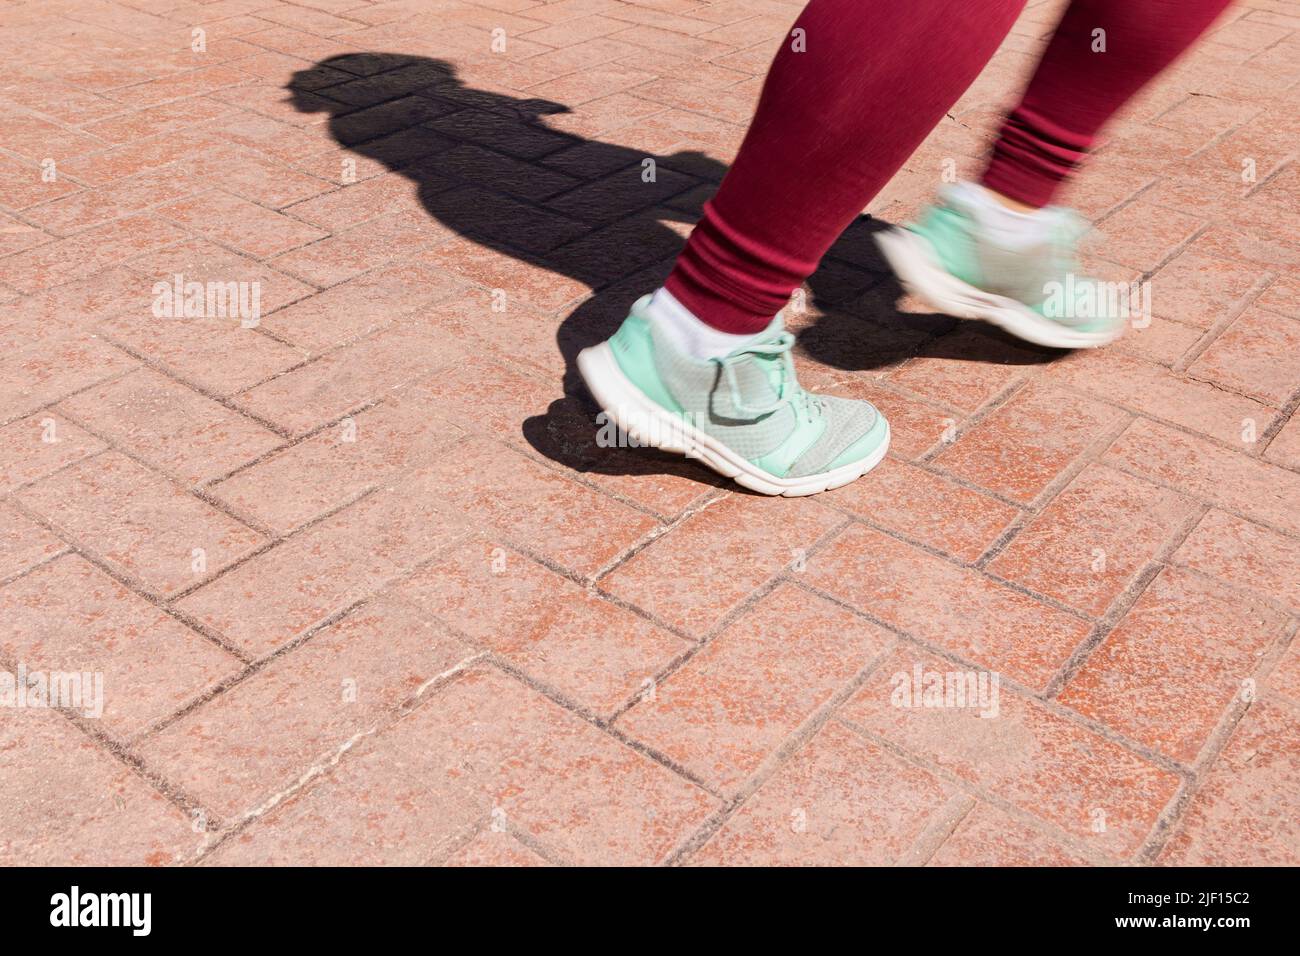 Auf einem gestempelten Betonpflaster können Sie die Füße einer nicht erkennbaren Person sehen, die läuft. Die Gliedmaßen werden durch die Bewegung verwischt. Stockfoto